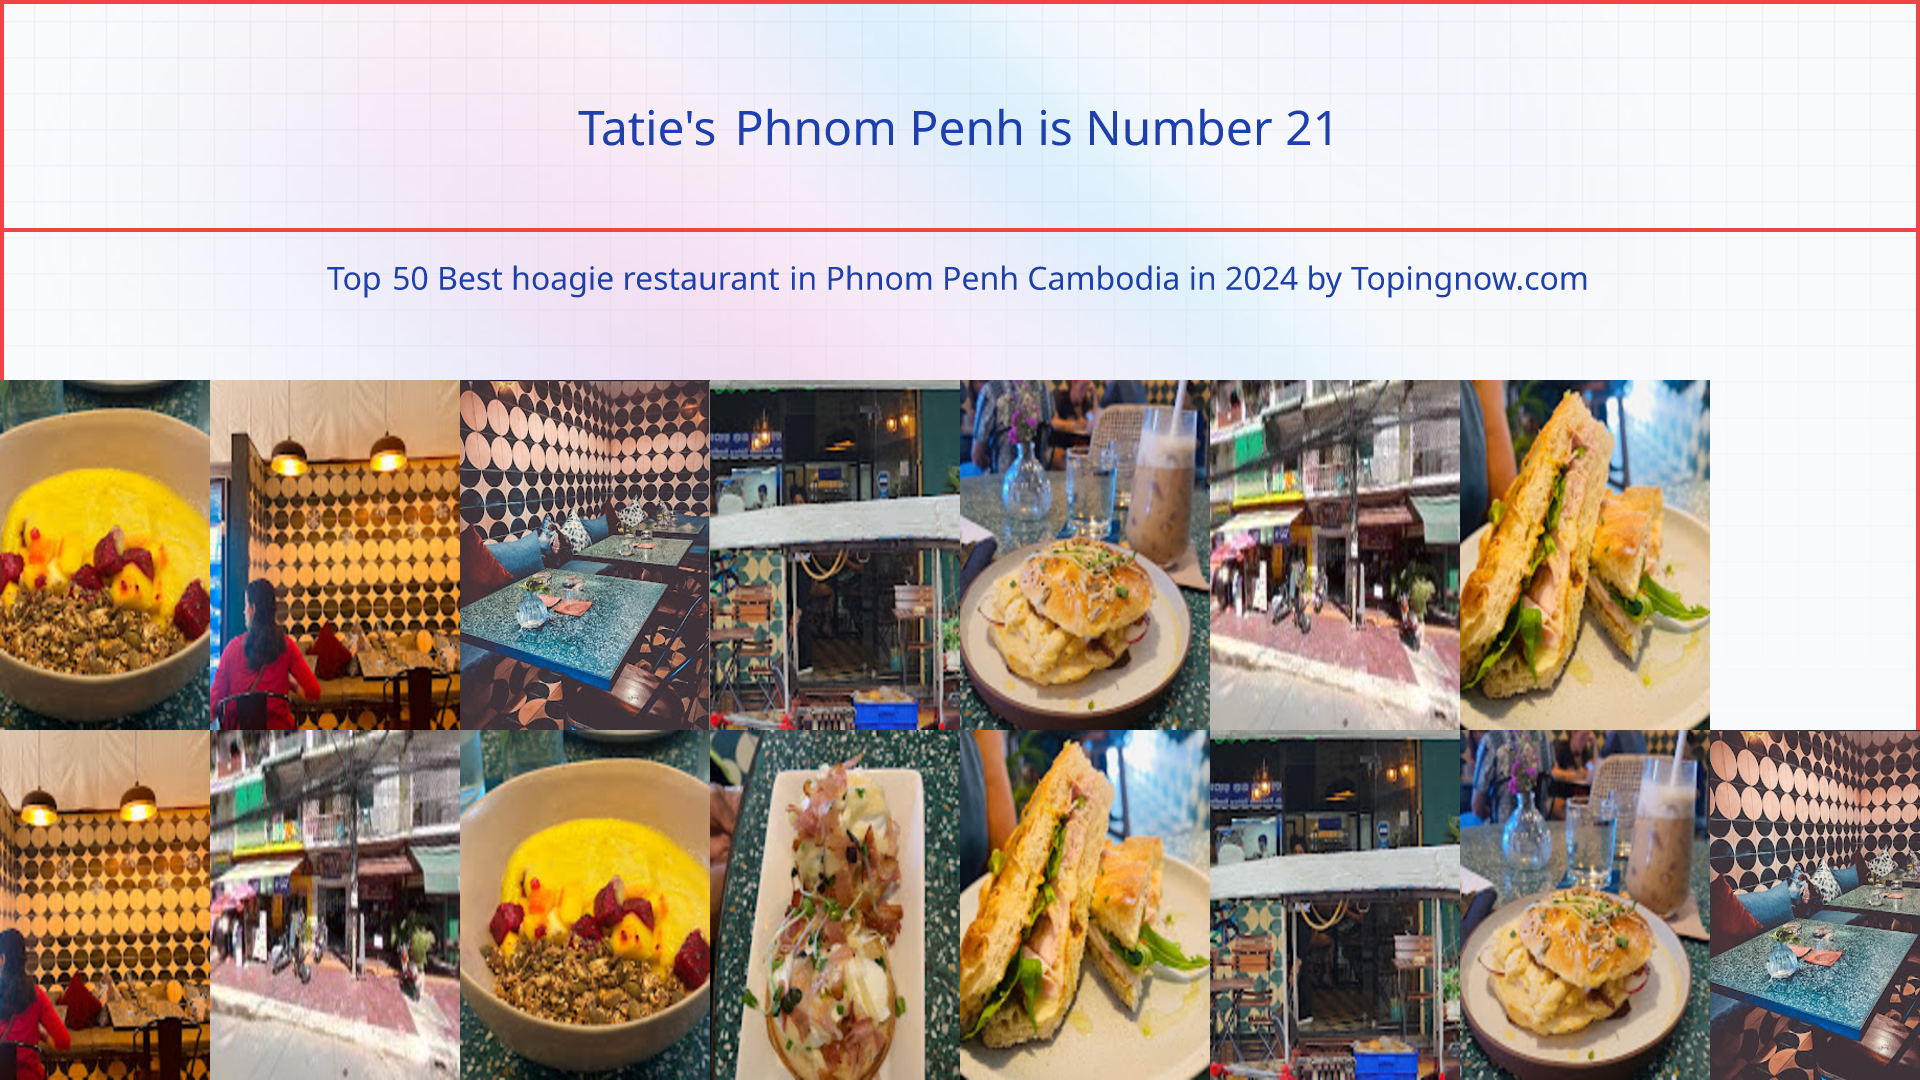 Tatie's Phnom Penh: Top 50 Best hoagie restaurant in Phnom Penh Cambodia in 2024